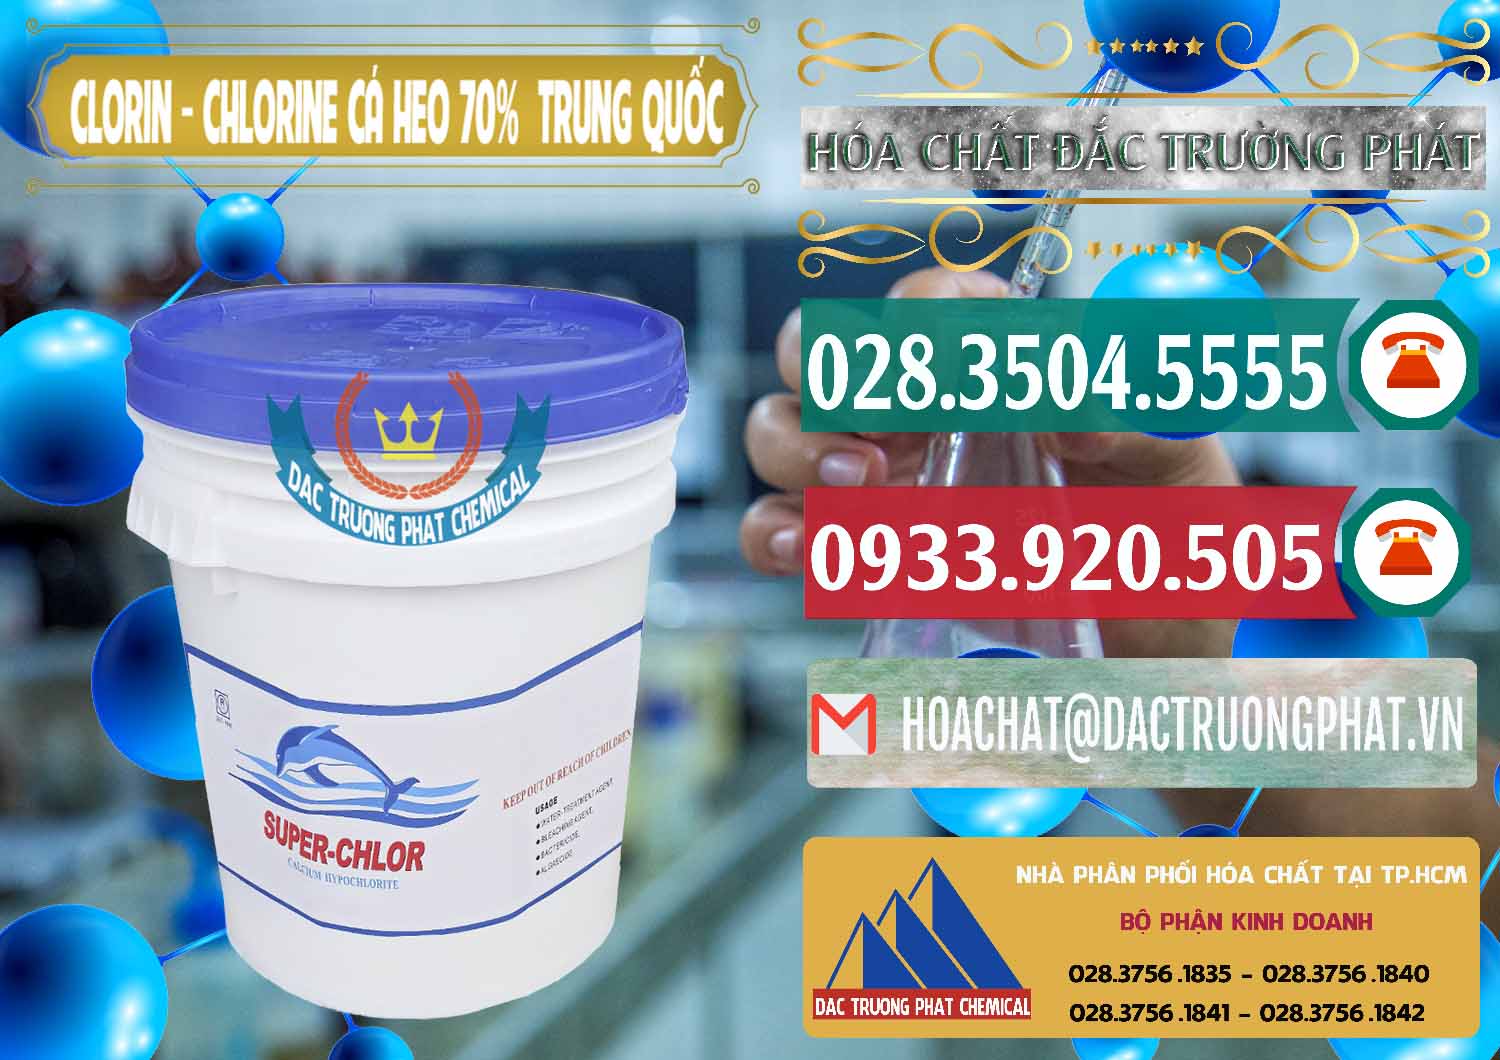 Chuyên cung cấp ( bán ) Clorin - Chlorine Cá Heo 70% Super Chlor Nắp Xanh Trung Quốc China - 0209 - Cty phân phối _ kinh doanh hóa chất tại TP.HCM - muabanhoachat.vn